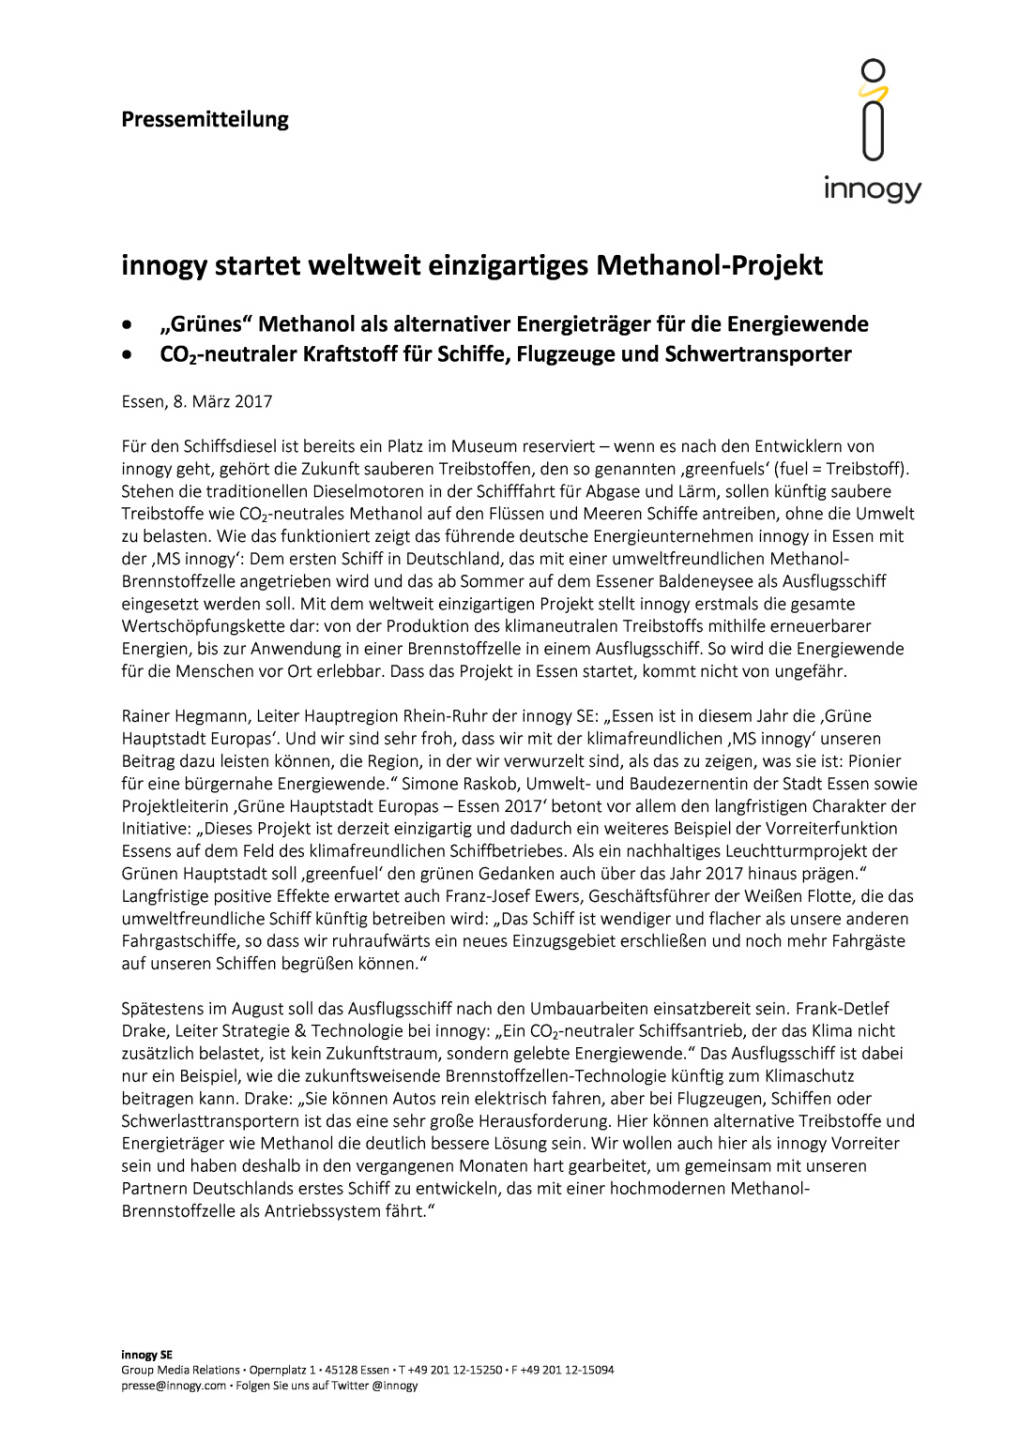 innogy startet weltweit einzigartiges Methanol-Projekt, Seite 1/2, komplettes Dokument unter http://boerse-social.com/static/uploads/file_2148_innogy_startet_weltweit_einzigartiges_methanol-projekt.pdf